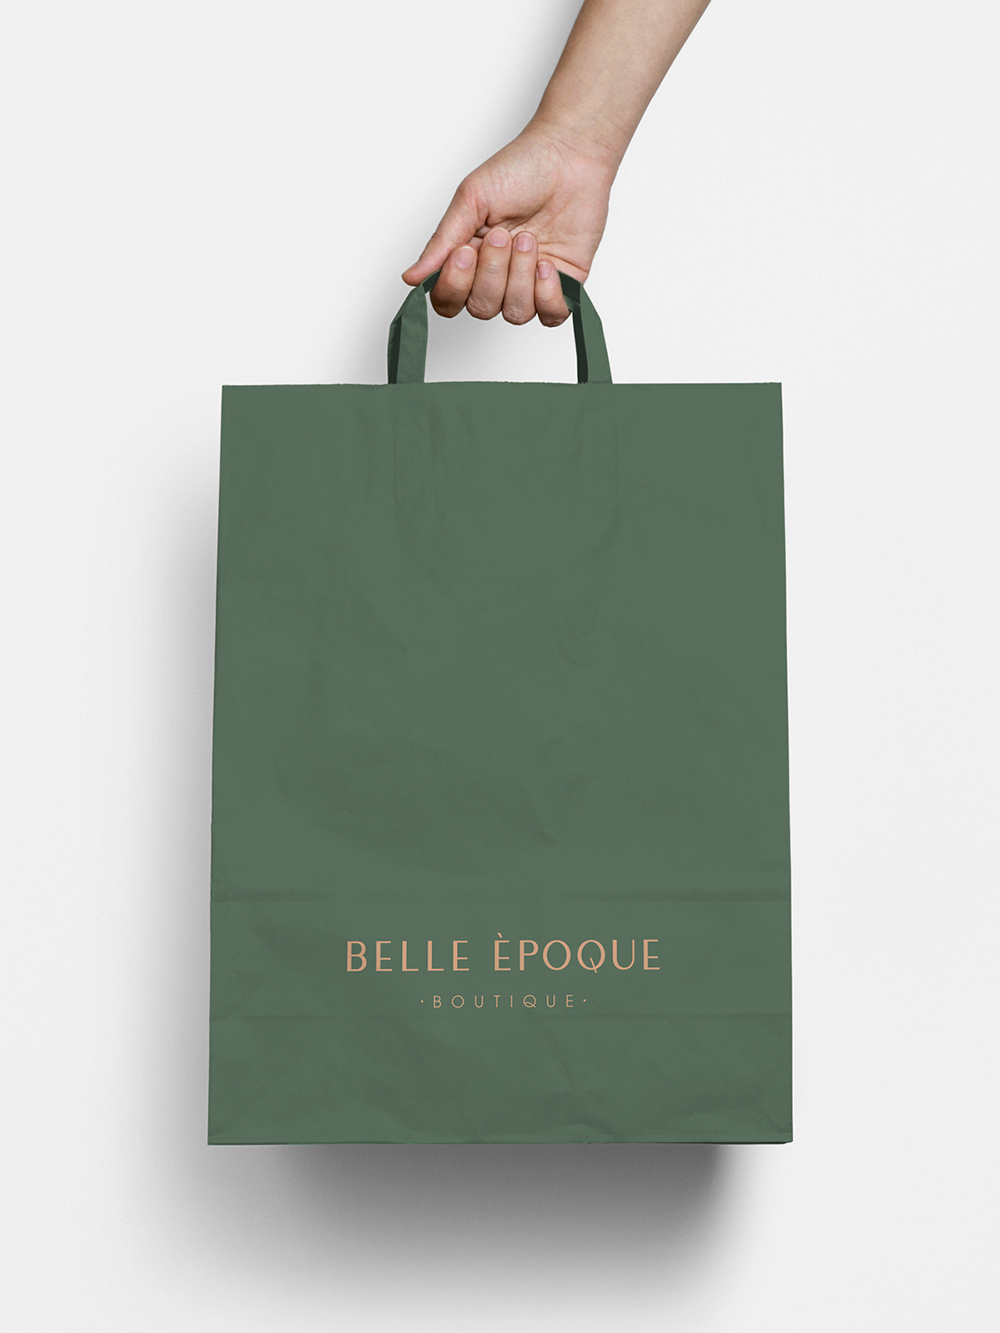 Diseño y desarrollo de identidad visual corporativa para Belle Èpoque. Bolsa de compra.